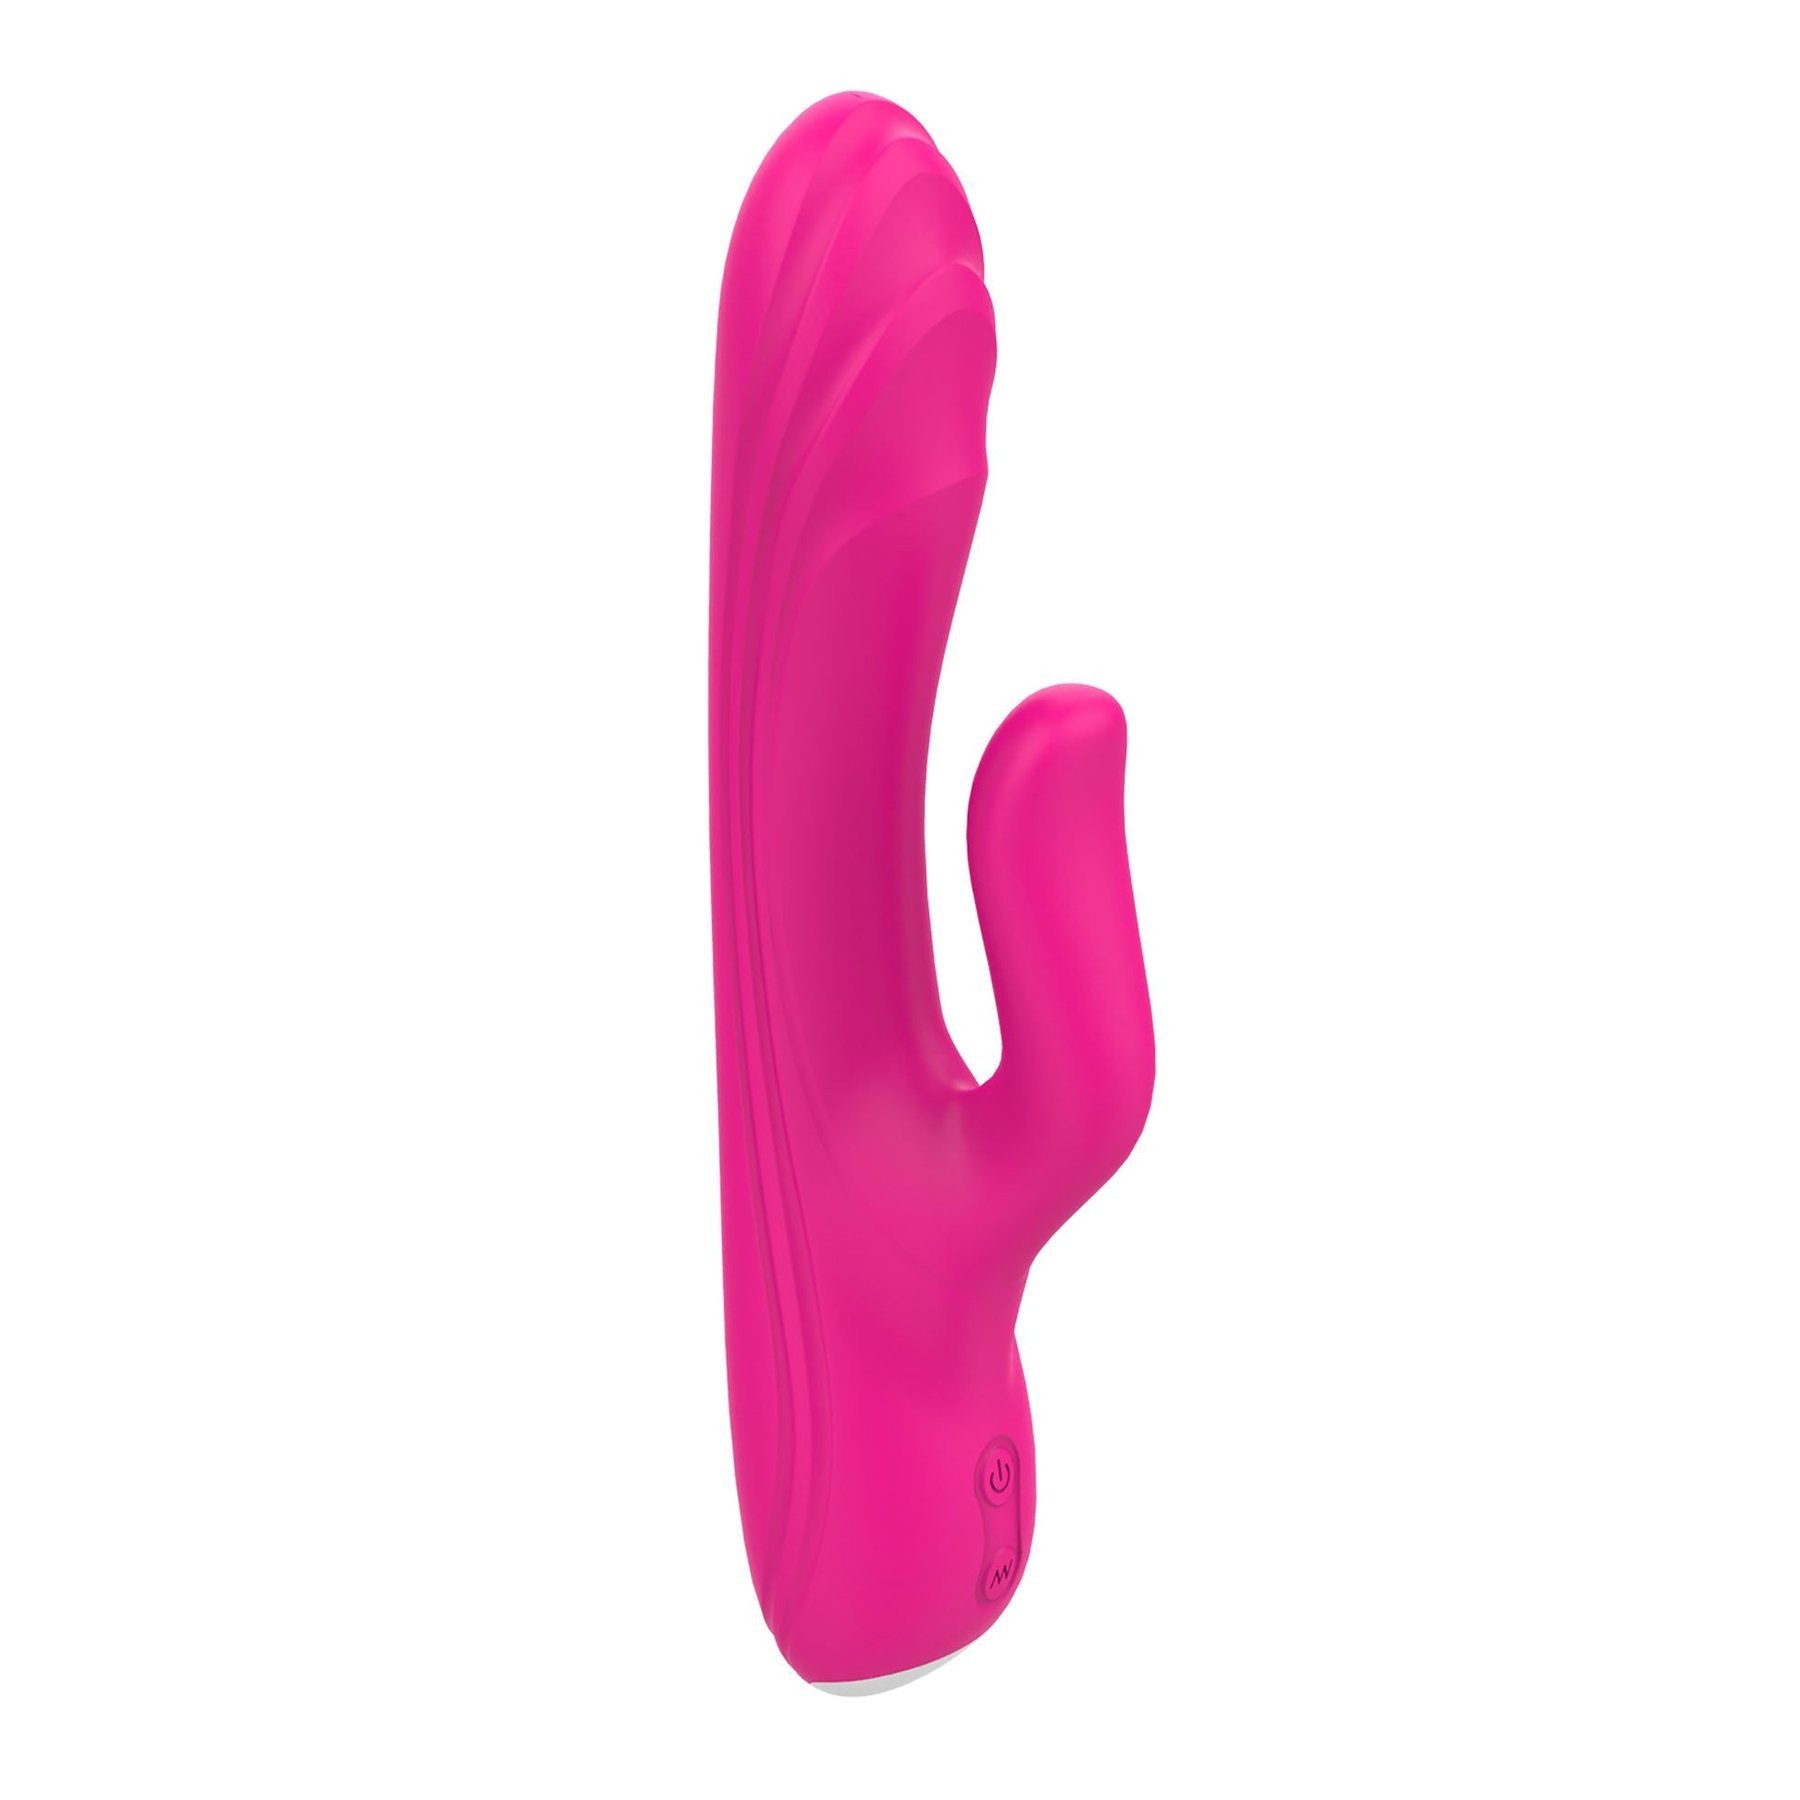 Vibratorius kiškutis „Flexible G-Spot Vibe“ - Dream Toys